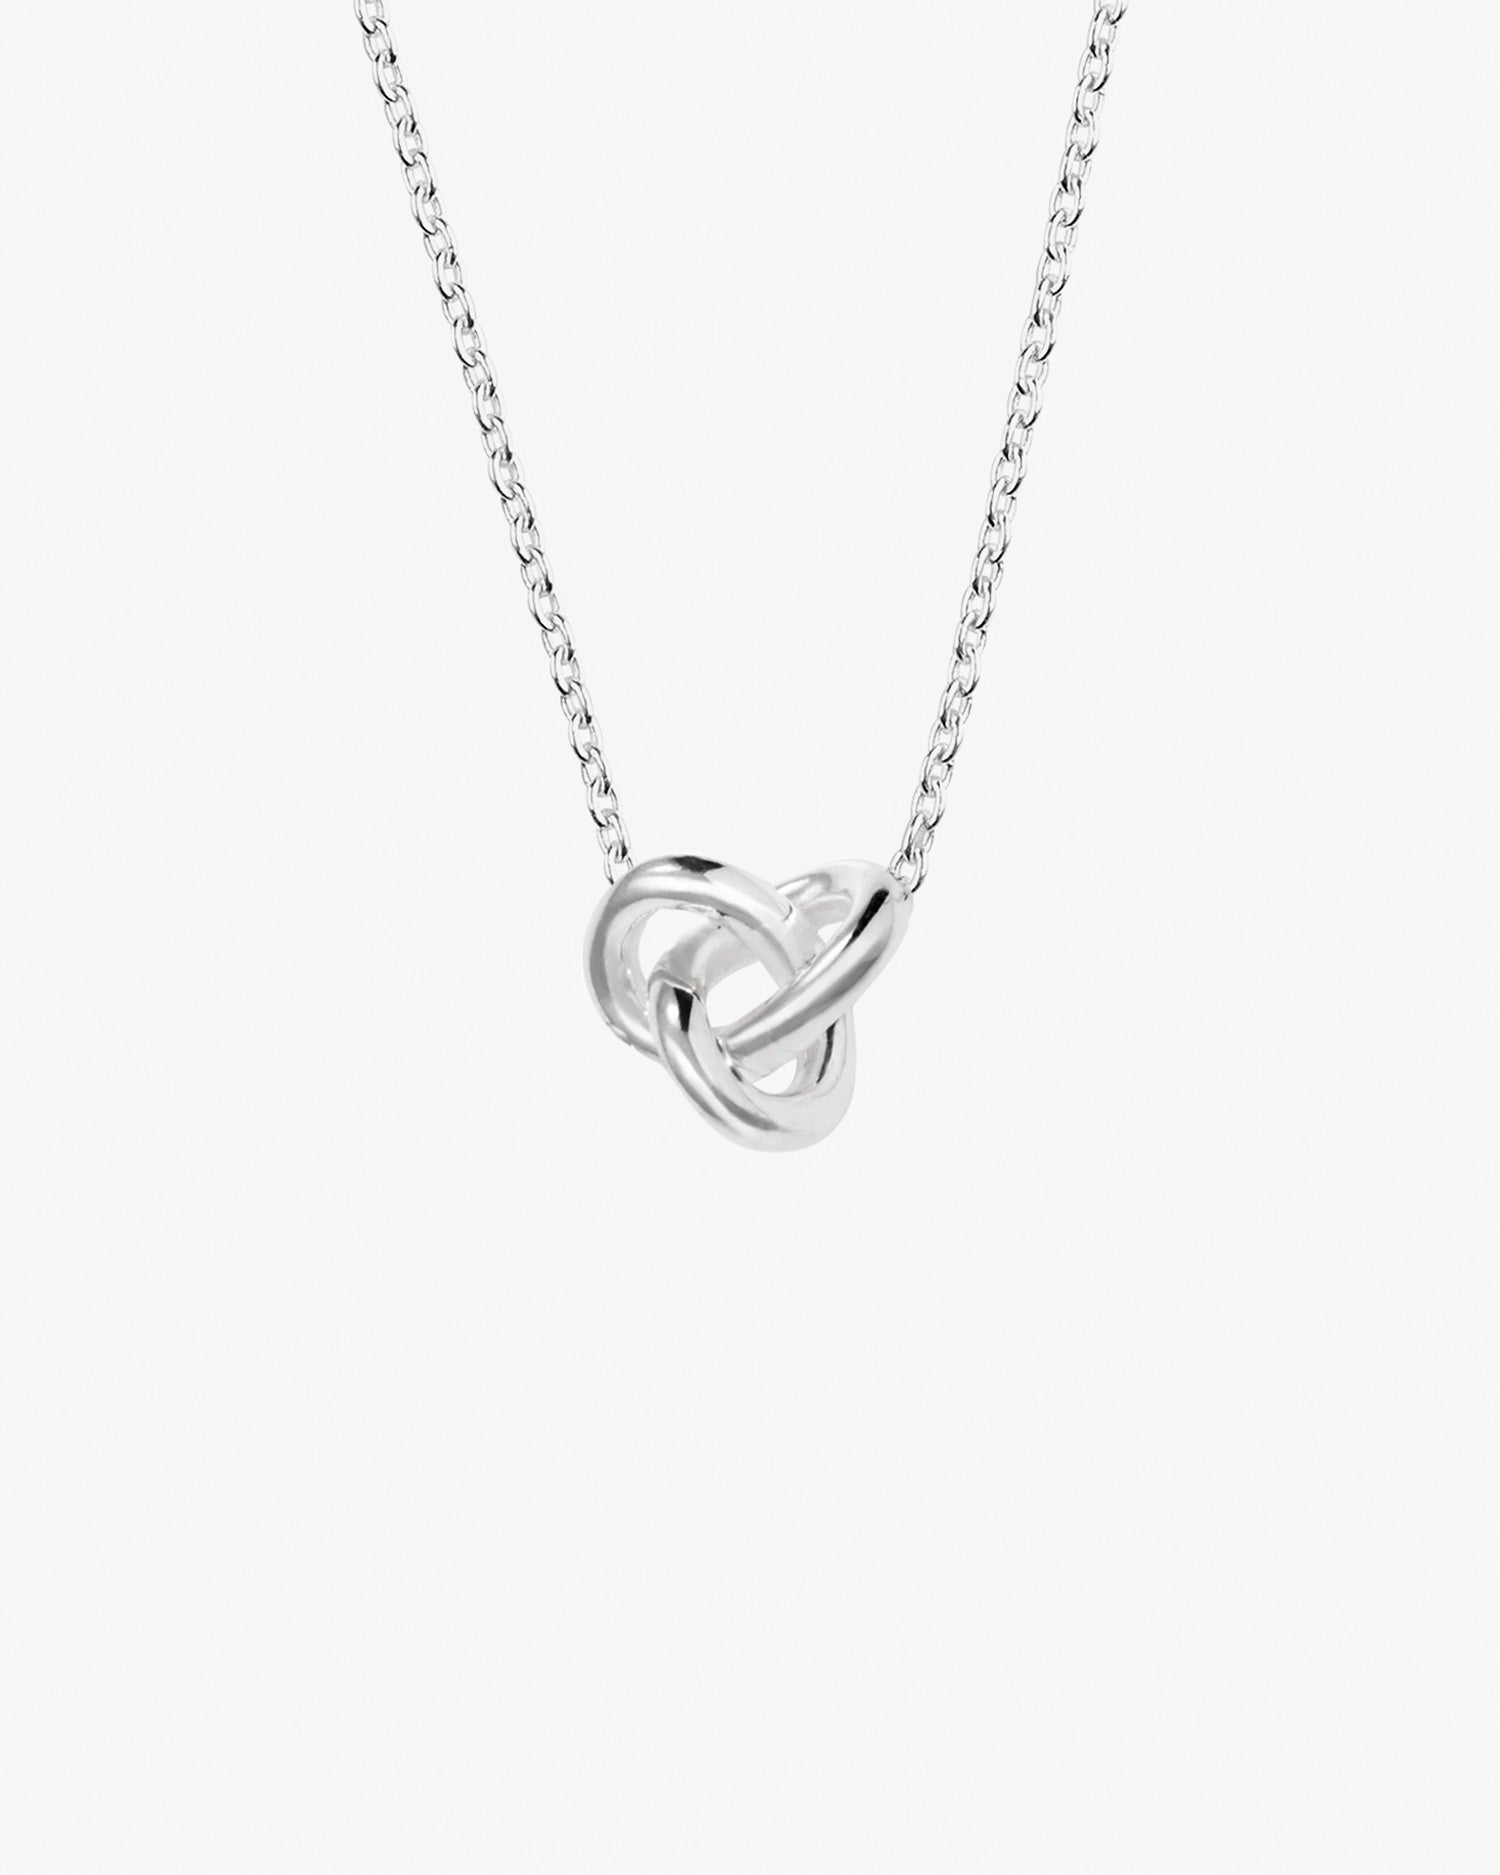 le-knot-necklace-02